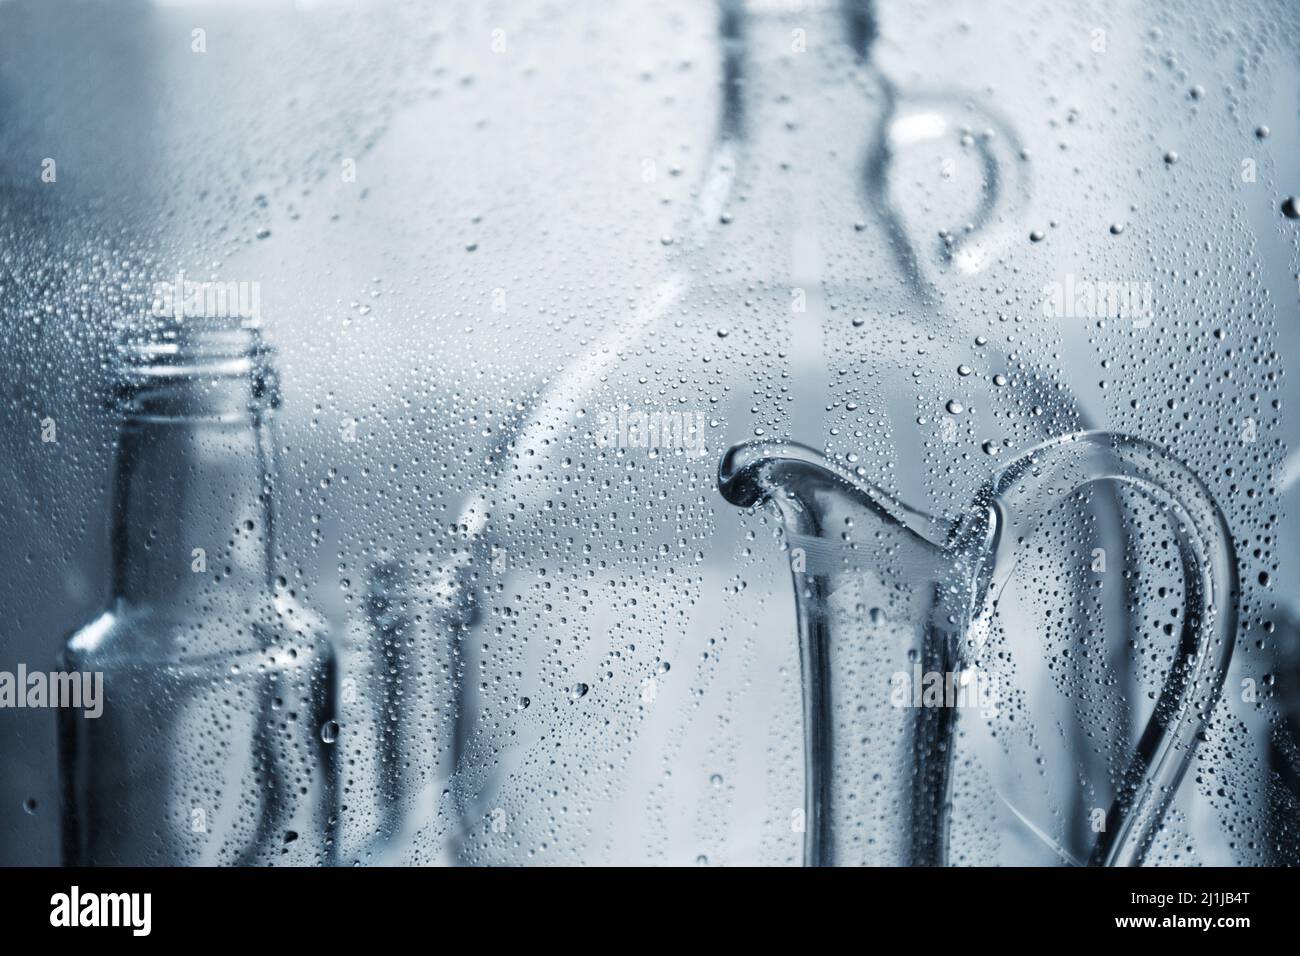 Karaffe für Wasser. Transparente Glasflaschen in Wassertropfen. Glasteller. Stockfoto